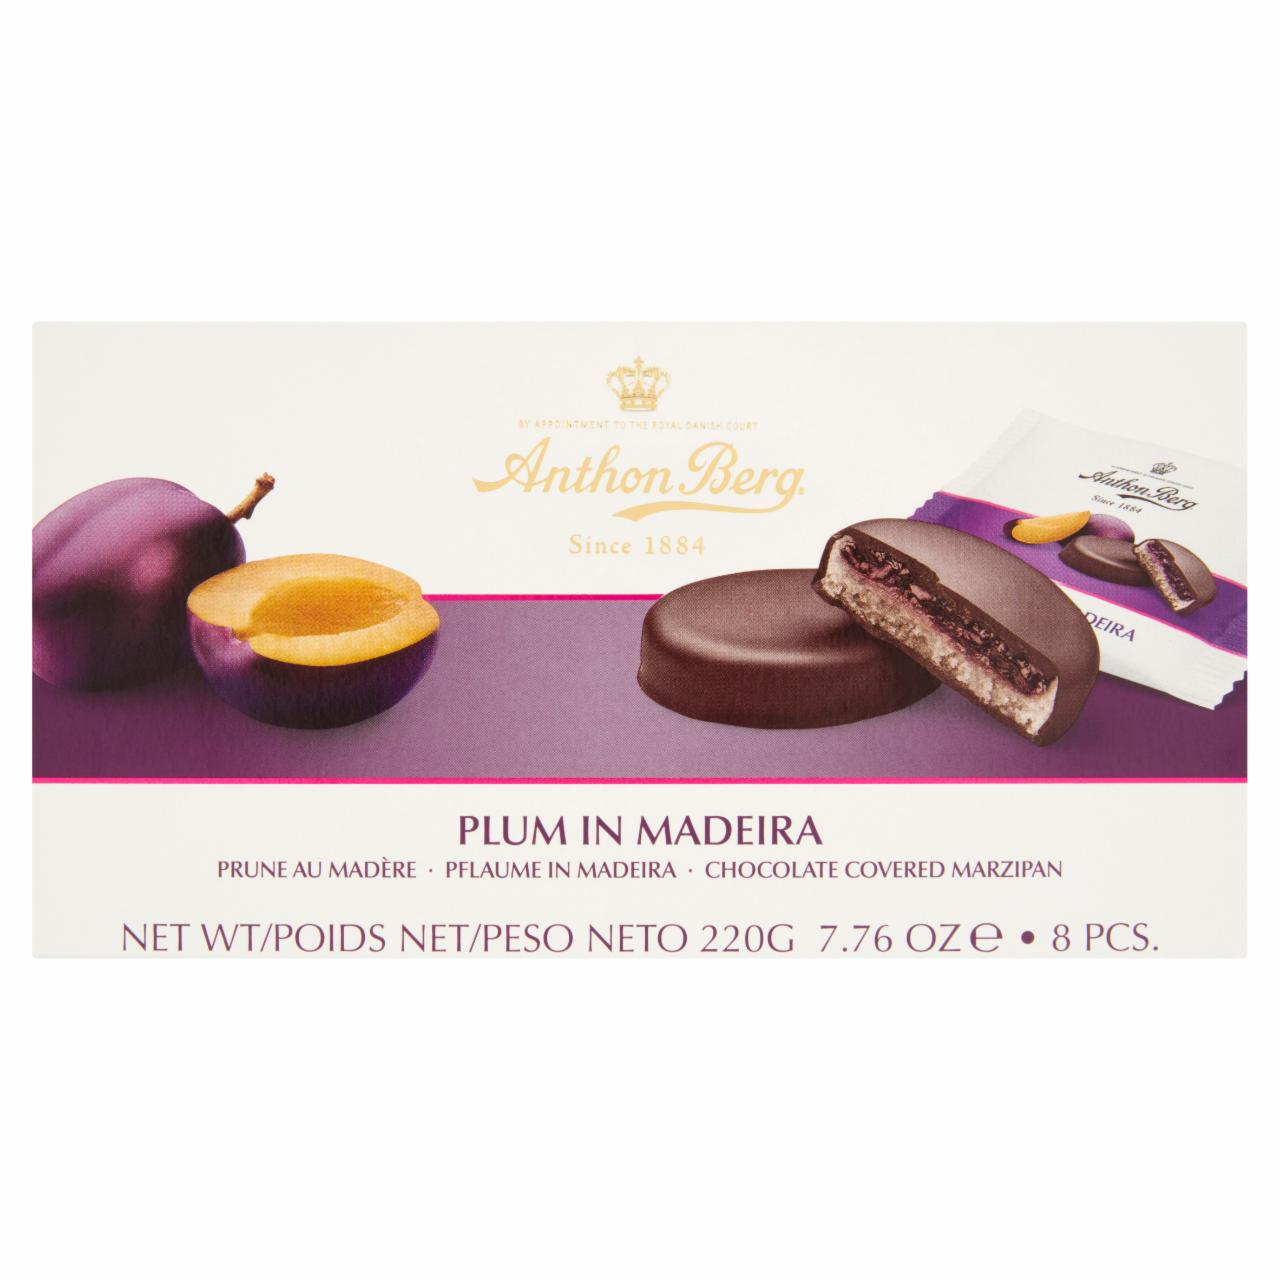 Képek - Anthon Berg csokoládé marcipánnal és Madeira likőrben lévő szilvával töltve 8 db 220 g